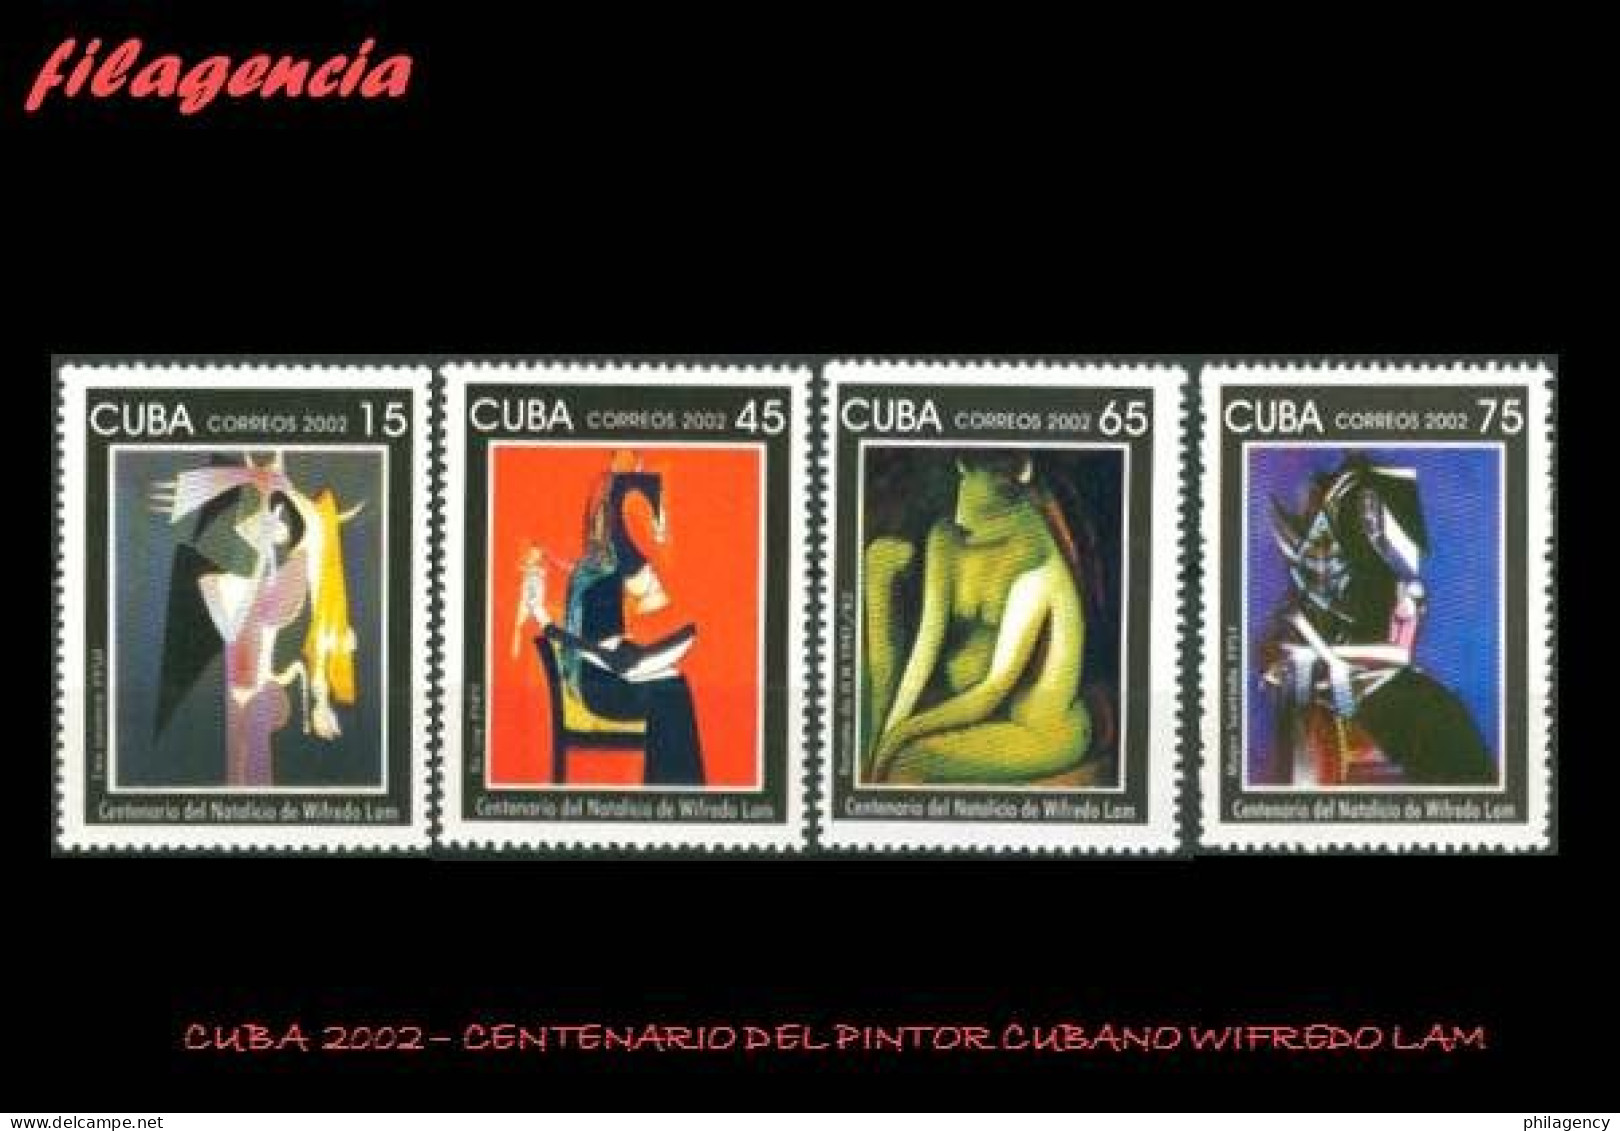 CUBA MINT. 2002-25 CENTENARIO DEL PINTOR CUBANO WIFREDO LAM - Nuevos